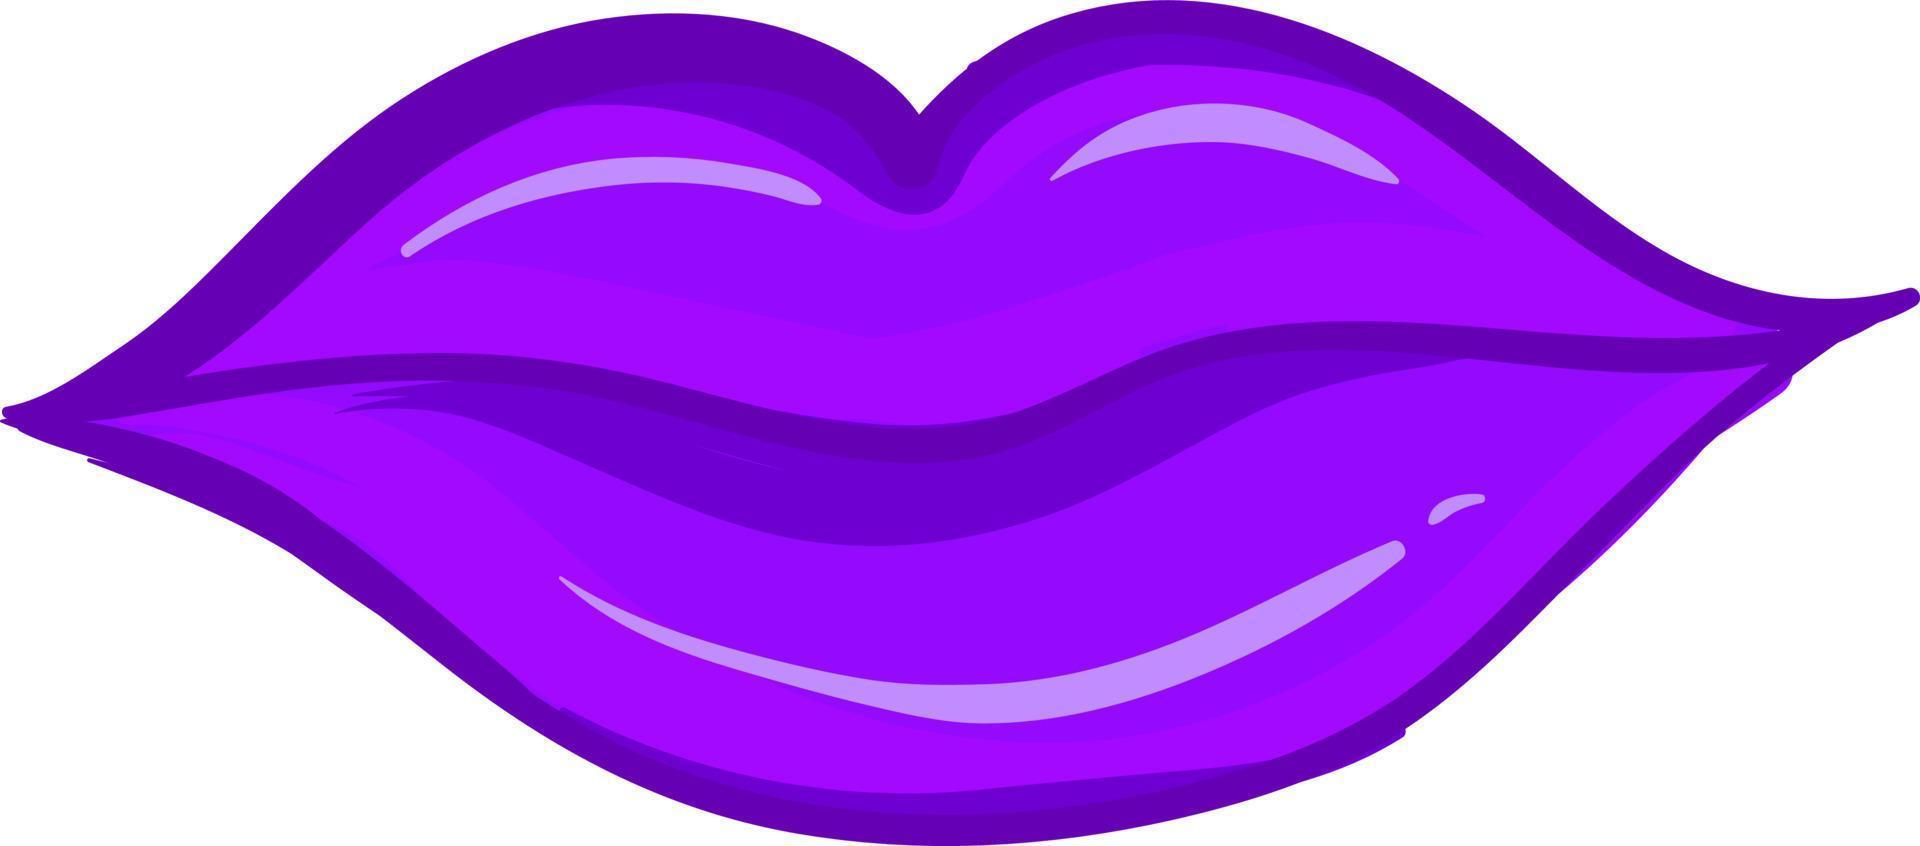 lèvres violettes, illustration, vecteur sur fond blanc.